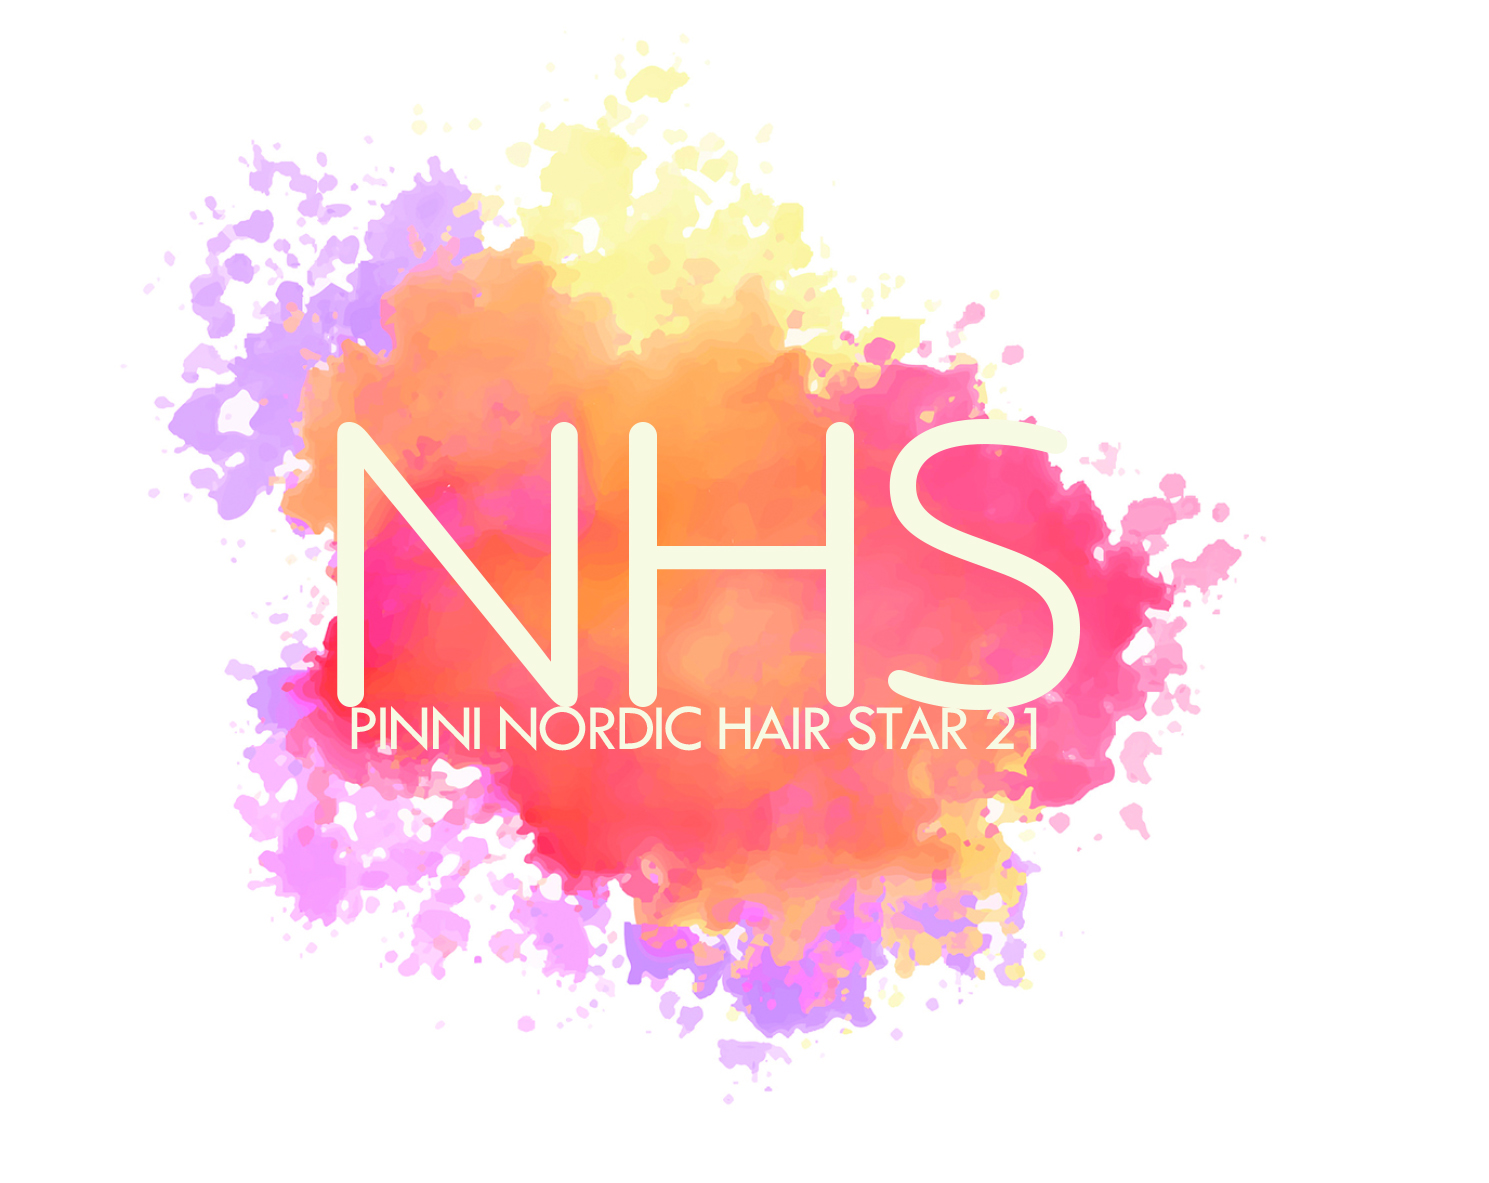 Pinni Nordic Hair Star siirtyy – uusi tapahtumapäivä on lauantai 14. toukokuuta 2022